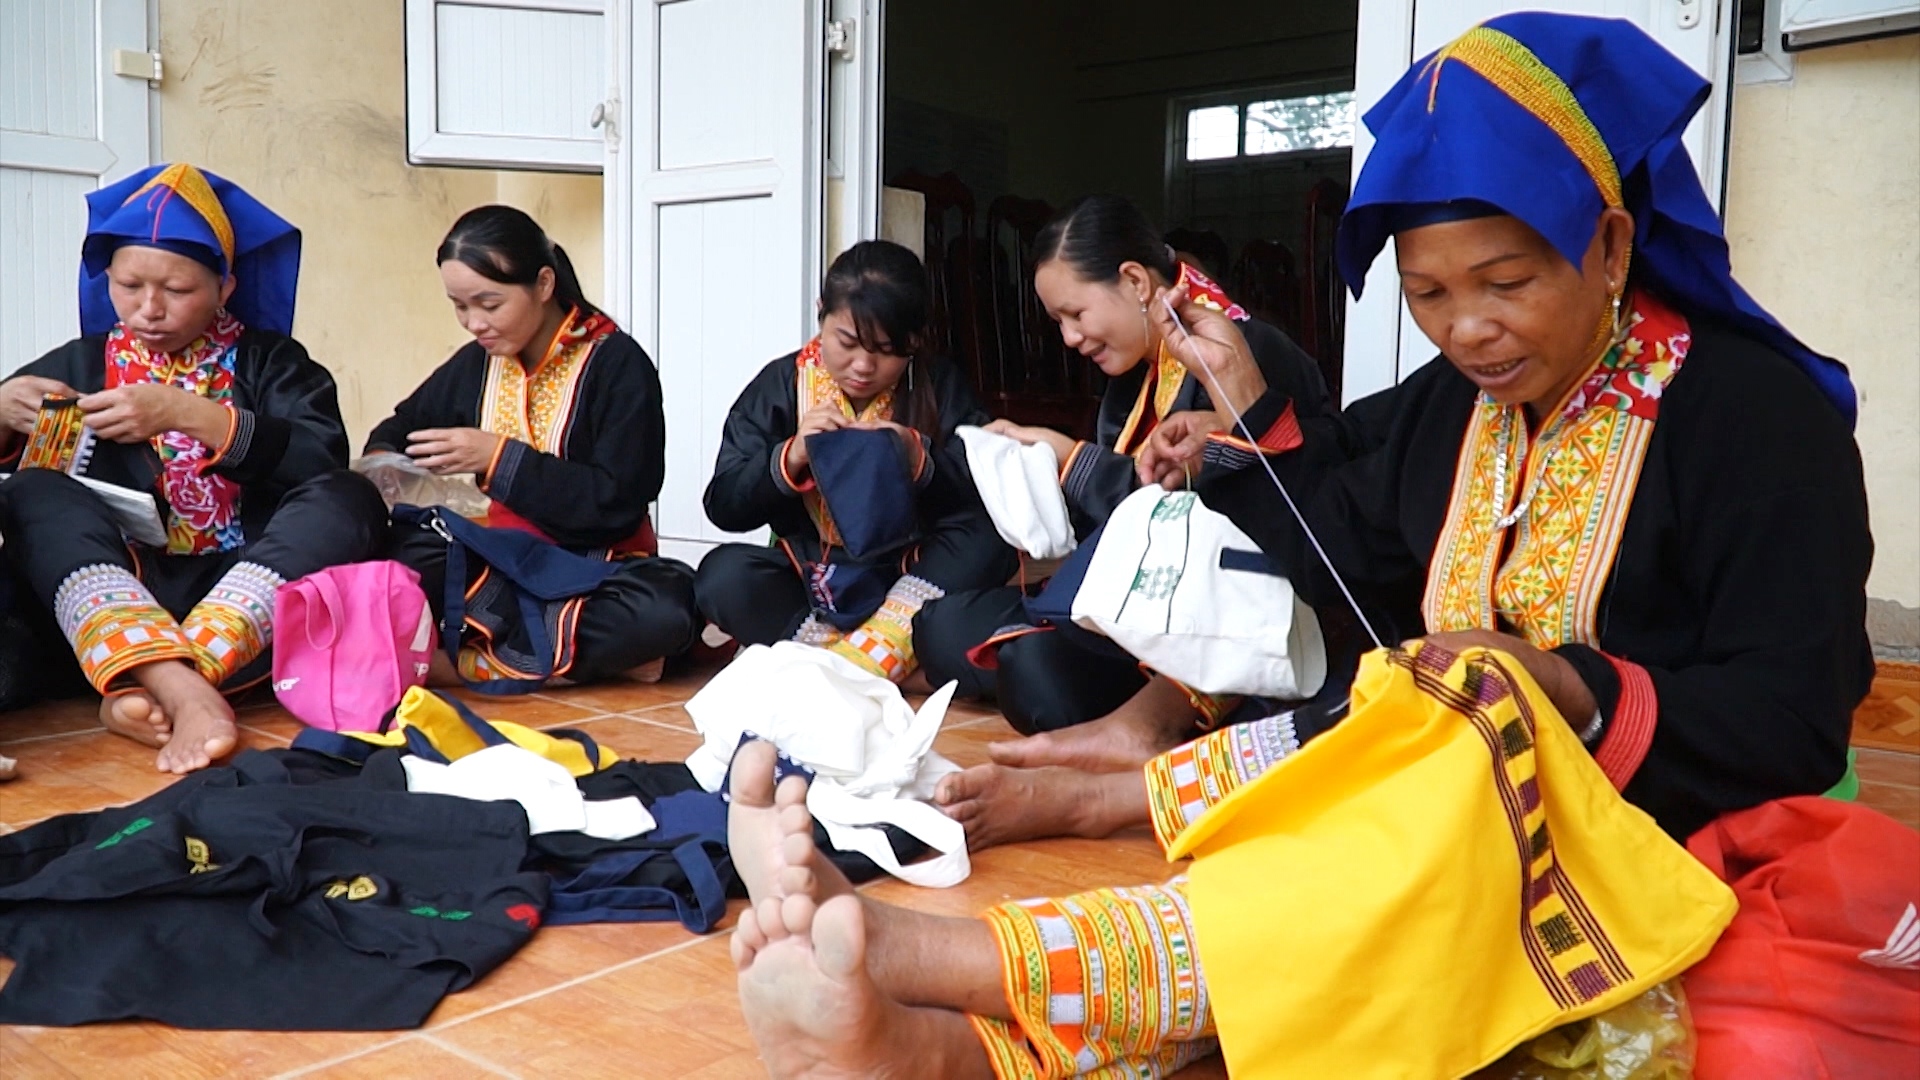 Phụ nữ Dao huyện Ba Chẽ, tỉnh Quảng Ninh tham gia lớp học thêu truyền thống ứng dụng trên chất liệu hiện đại tạo ra nhiều sản phẩm thương mại, hấp dẫn du khách.